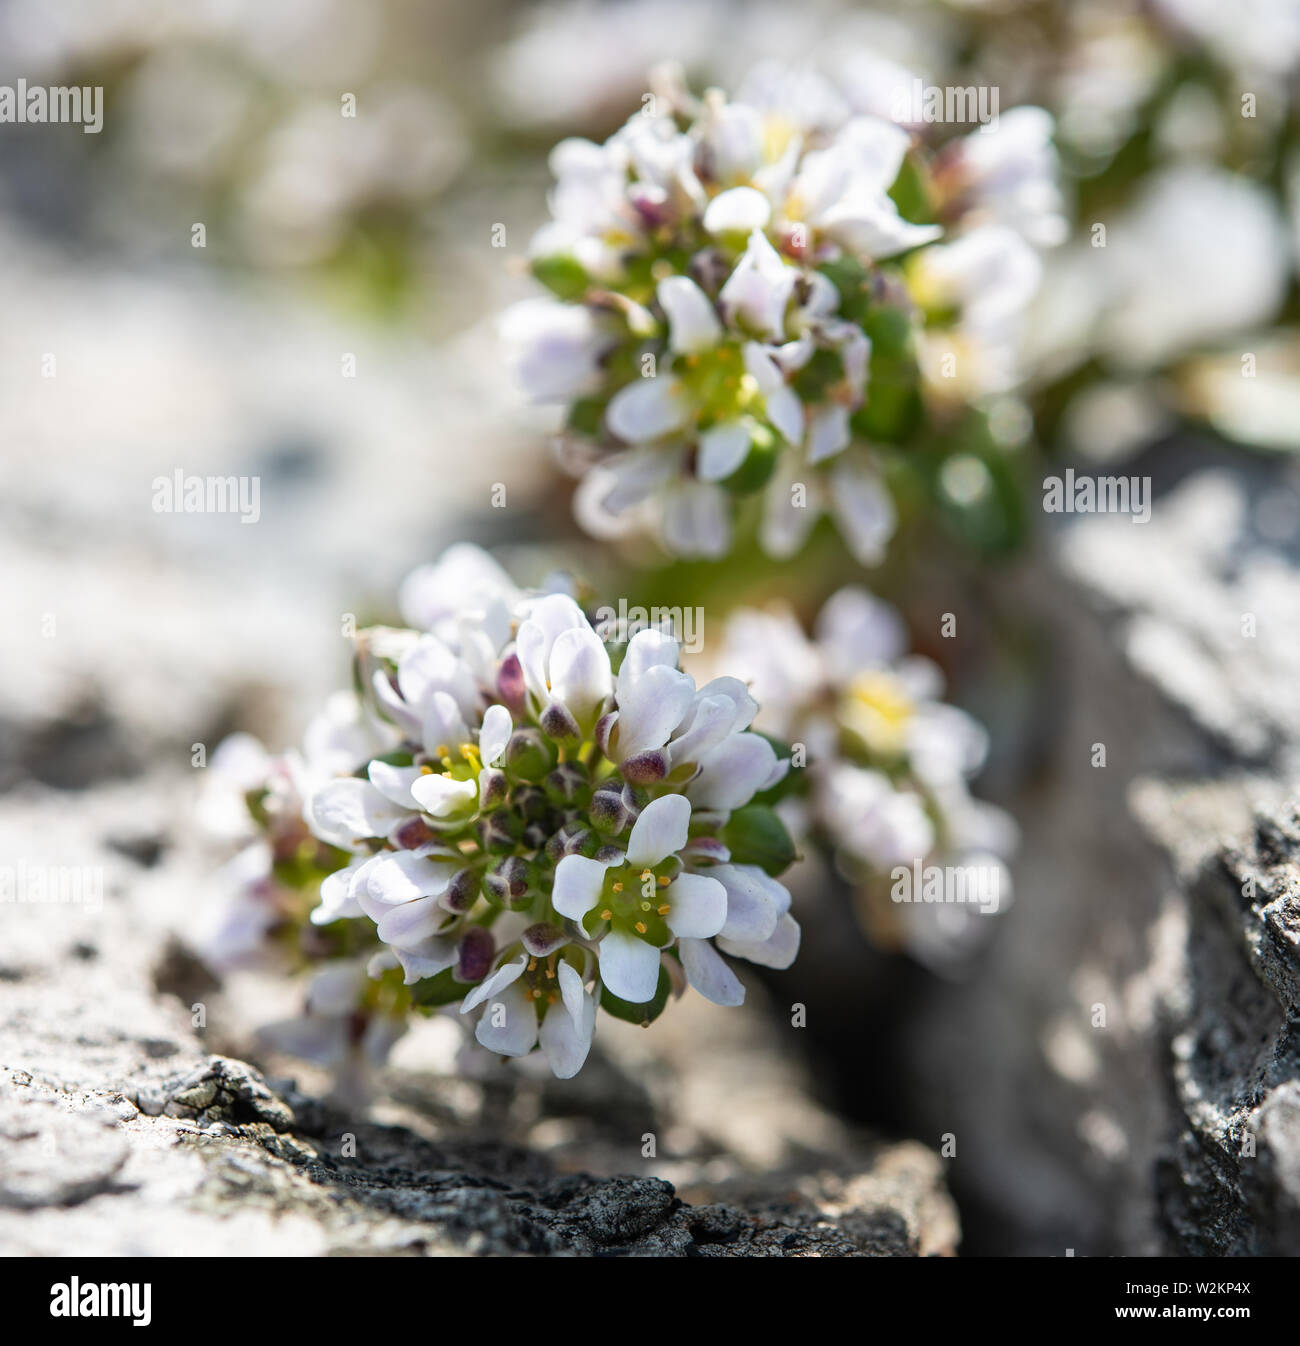 Alyssum blanc fleur plante close-up de plus en plus, dans les roches Banque D'Images